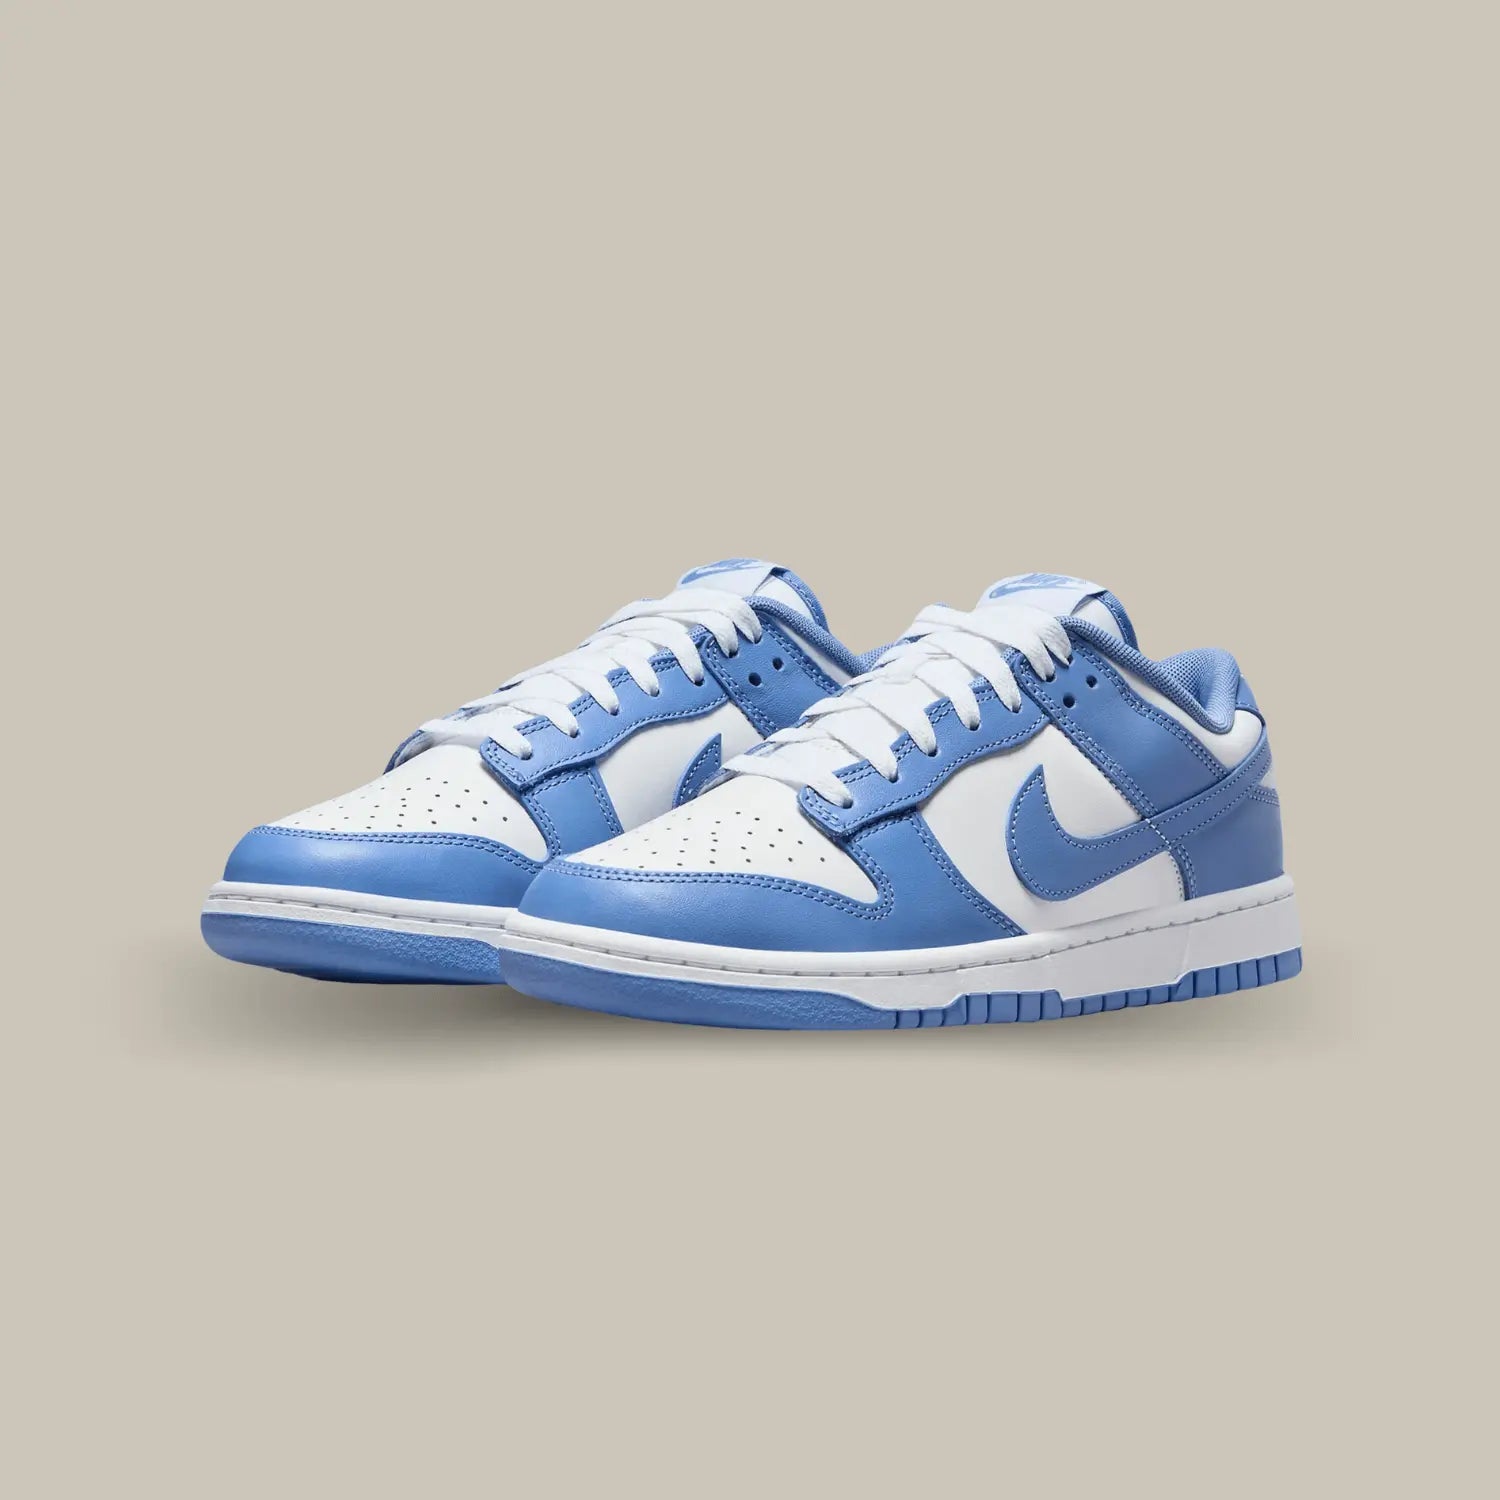 La Nike Dunk Low Polar Blue possède une base en cuir blanc avec des apiécements en cuir bleu ciel. On retrouve un swoosh de même couleur pour compléter le coloris efficace de cette paire.